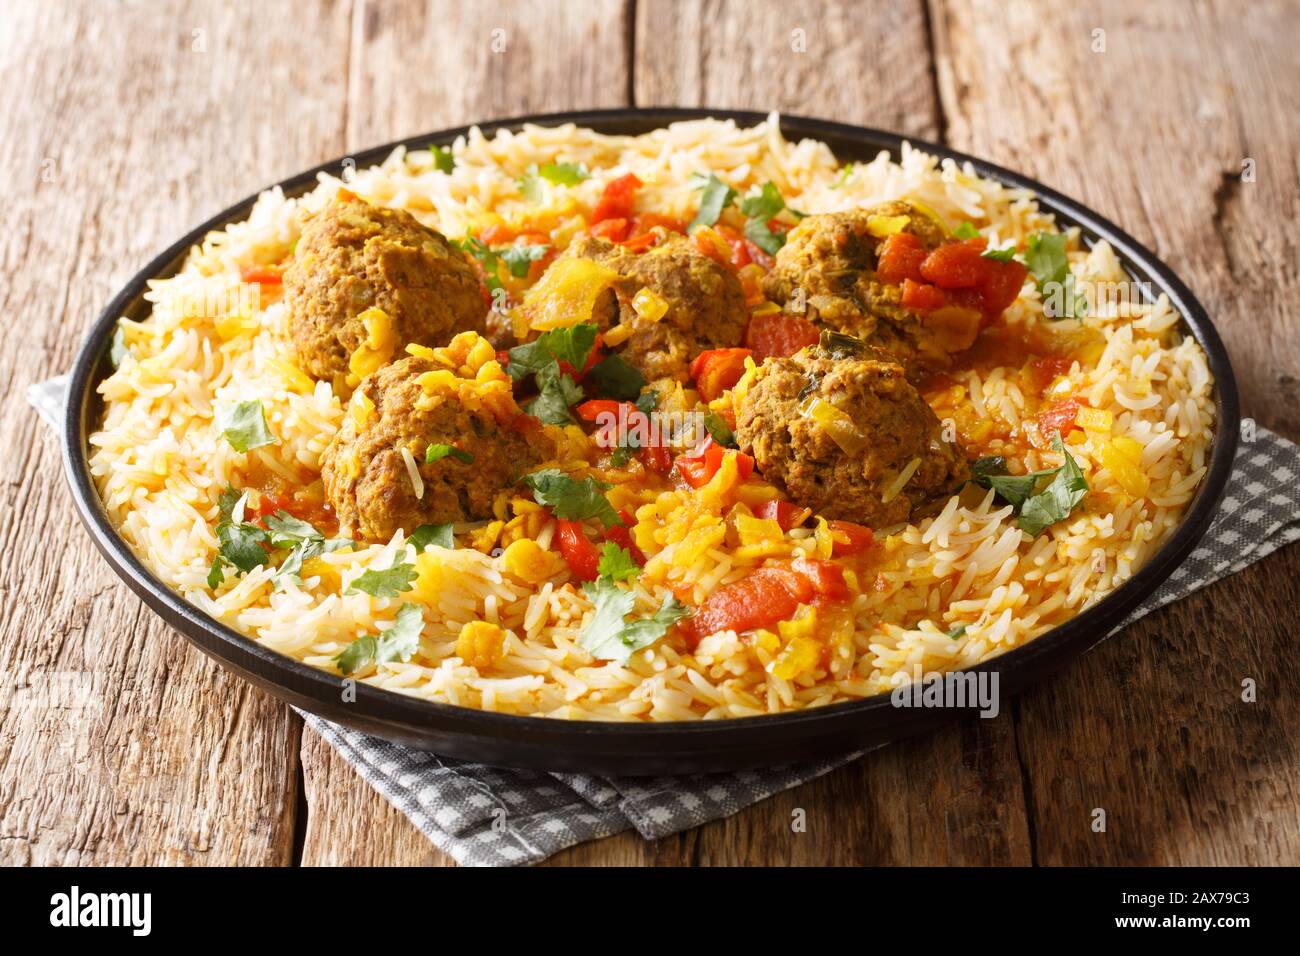 Kofta Chalao Rezept für afghanische Fleischbällchen in würziger Soße mit  gelben Erbsen, serviert mit Basmati-Reis in einer Platte auf dem Tisch.  Horizontal Stockfotografie - Alamy